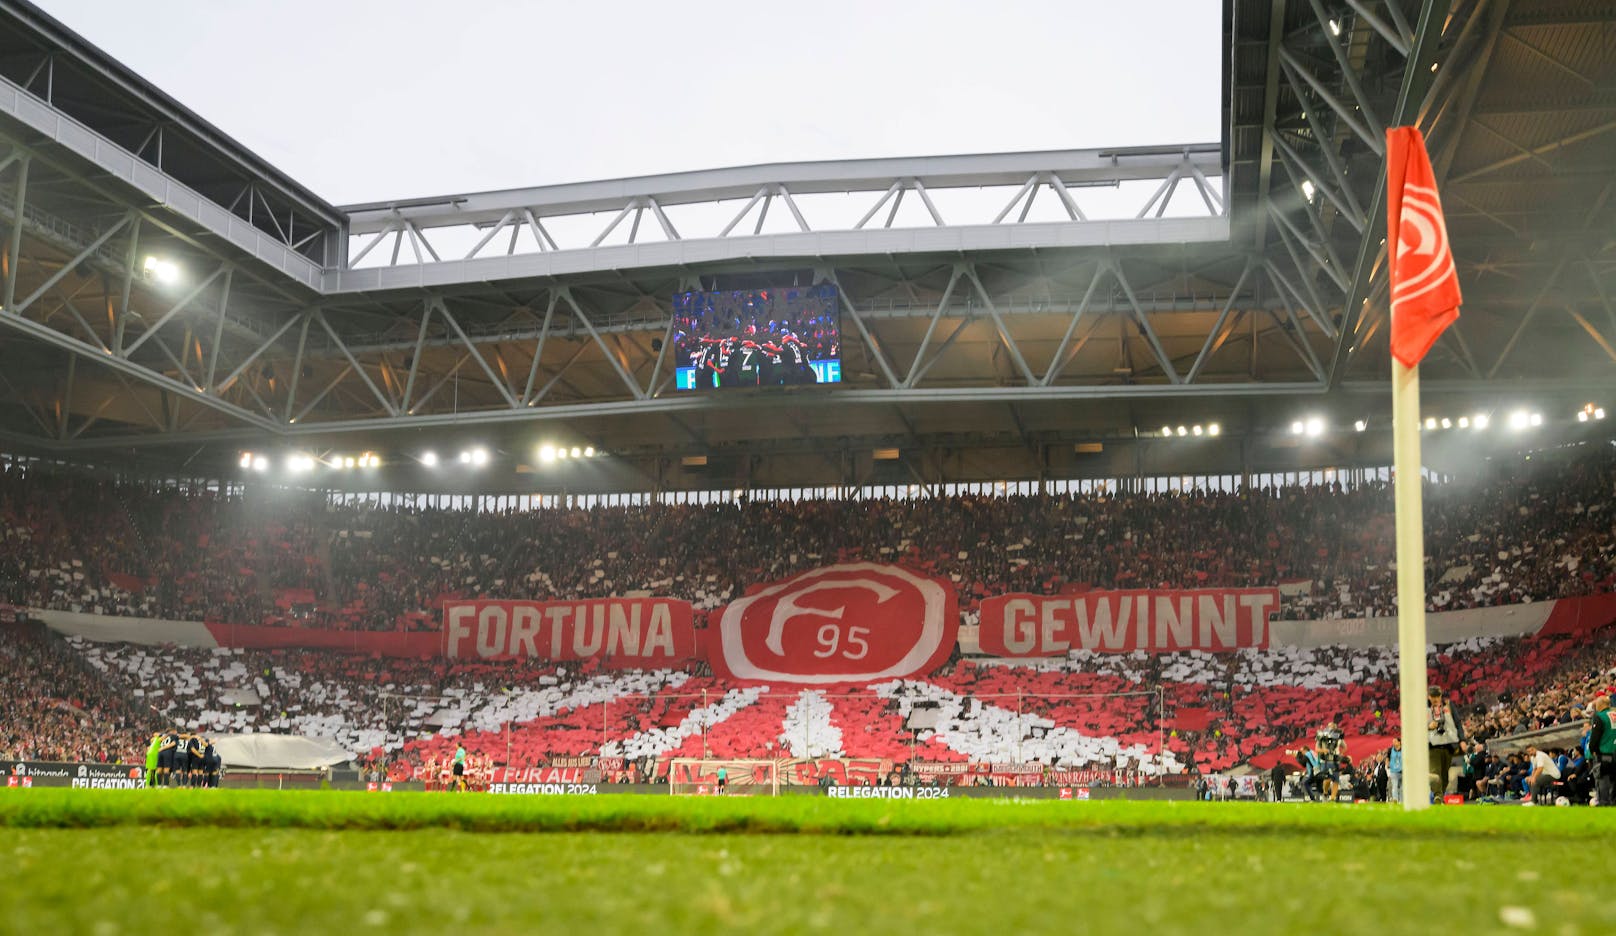 47.000 Menschen haben in der Düsseldorf Arena Platz. Normalerweise trägt der 2. Bundesliga Verein Fortuna Düsseldorf hier seine Heimspiele aus. Heuer scheiterten die 95er in der Relegation am VFL Bochum, vor allem am bärenstarken Österreicher Kevin Stöger, der einen 0:3 Rückstand aus dem Hinspiel fast im Alleingang drehte.